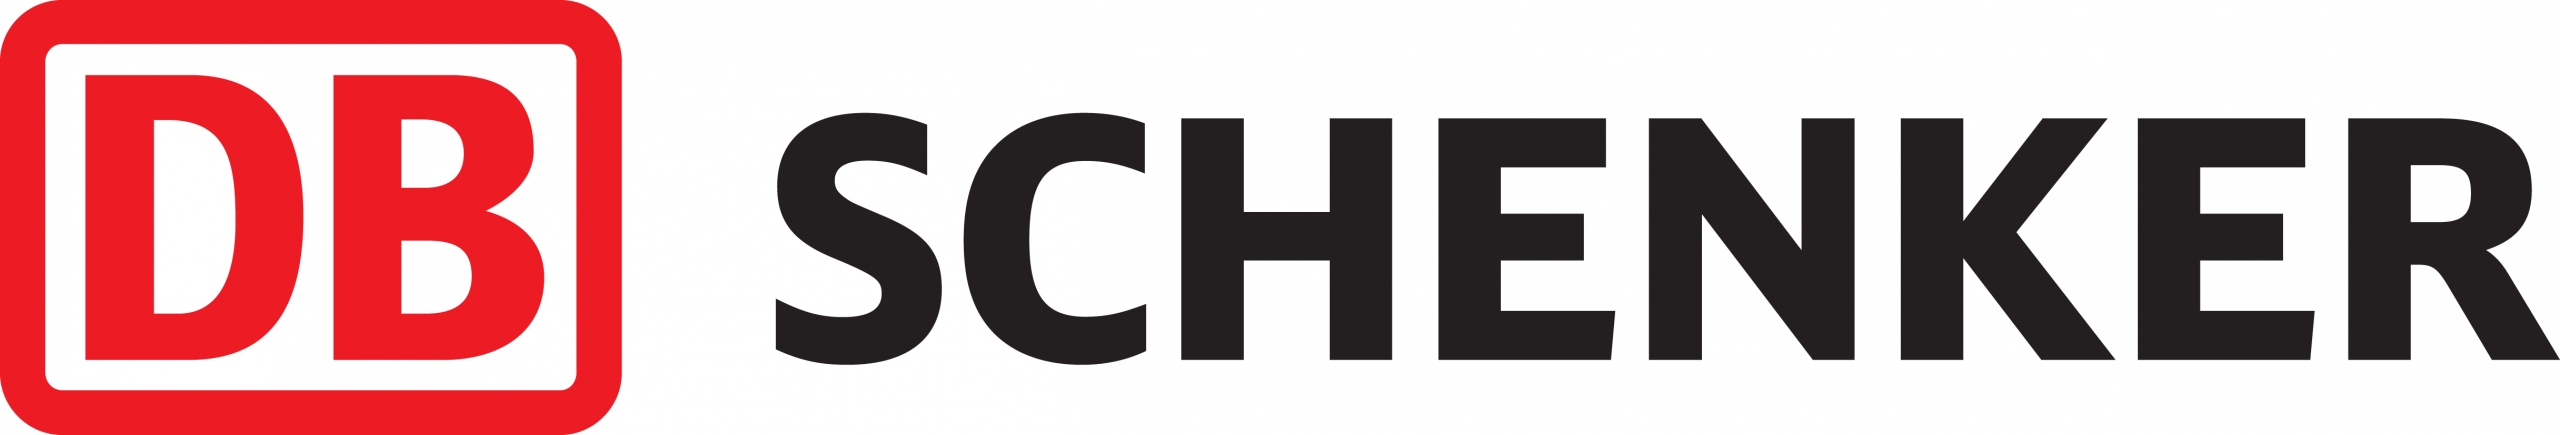 logo DB-SCHENKER